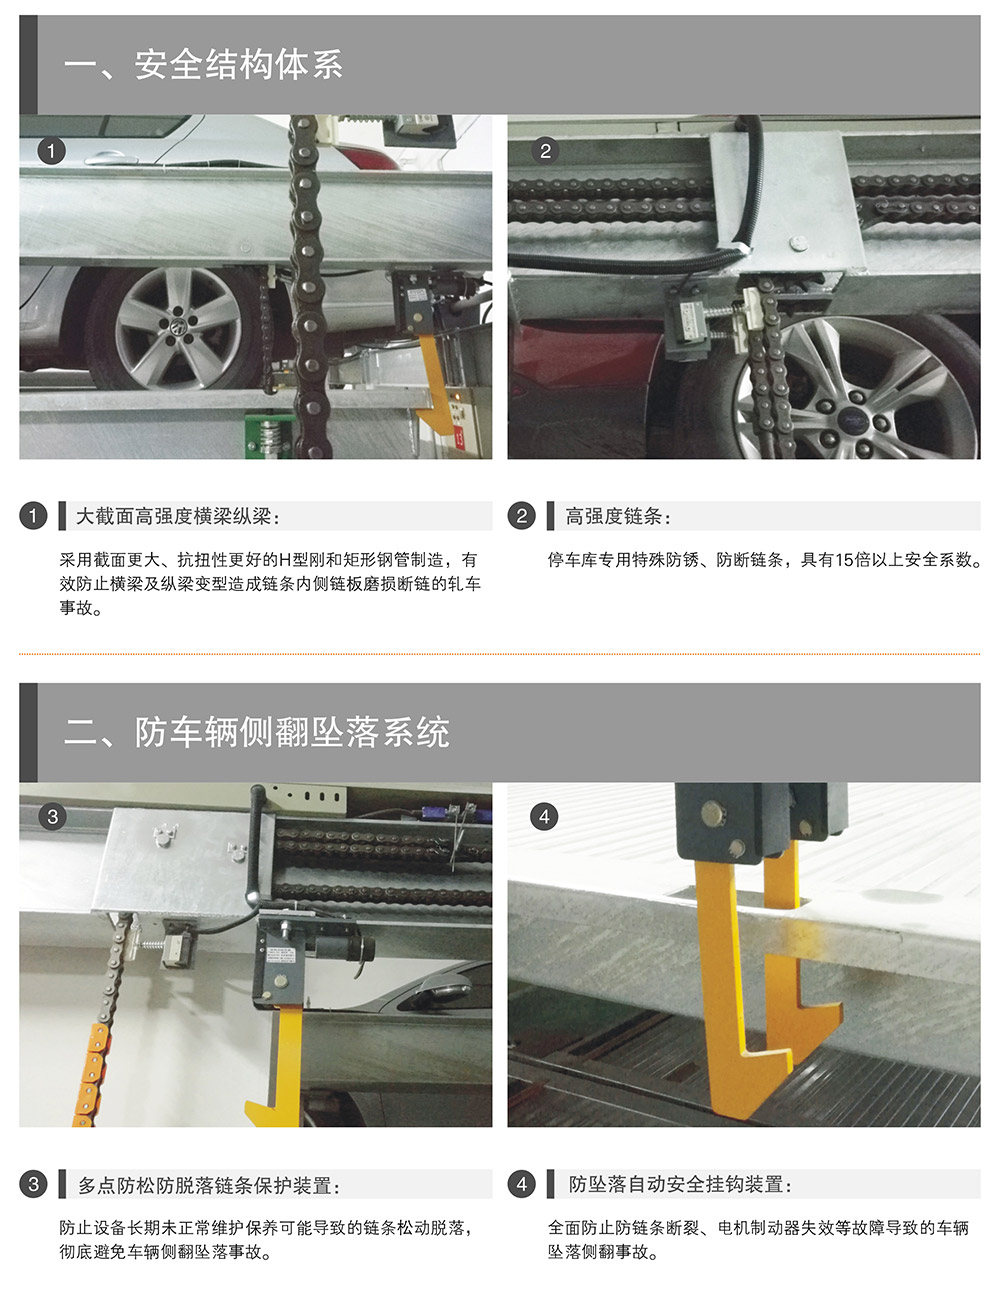 四川成都四至六层PSH4-6升降横移式立体停车设备安全结构体系.jpg